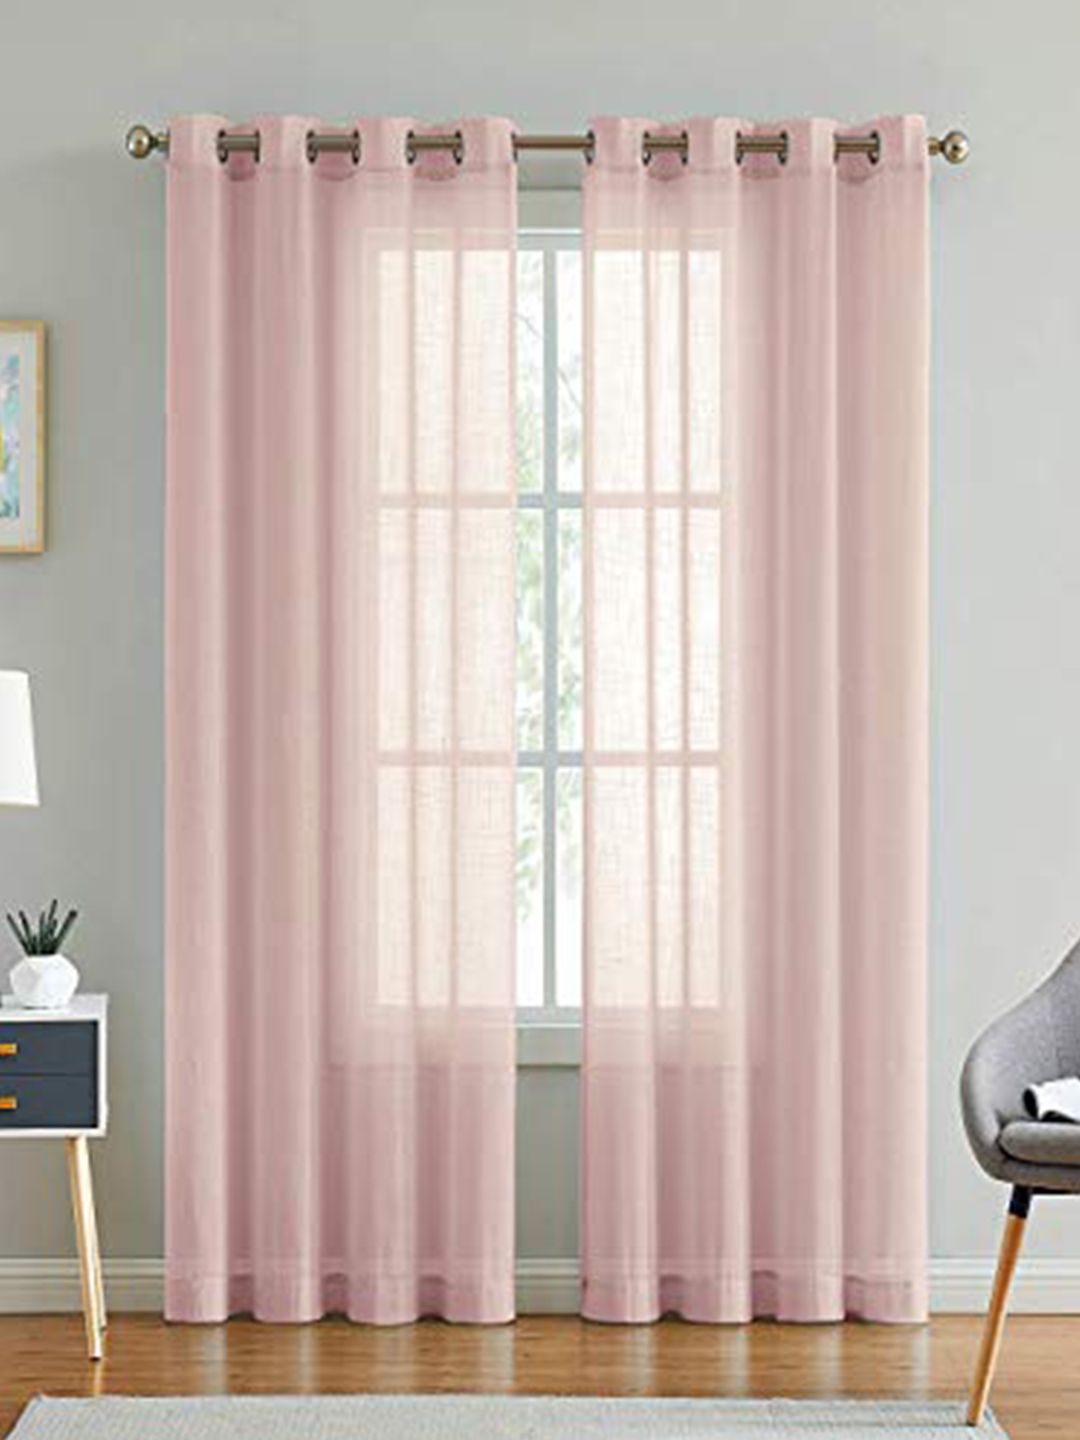 LINENWALAS Happy Sleeping Pink Set of 2 Sheer Door Curtain Price in India